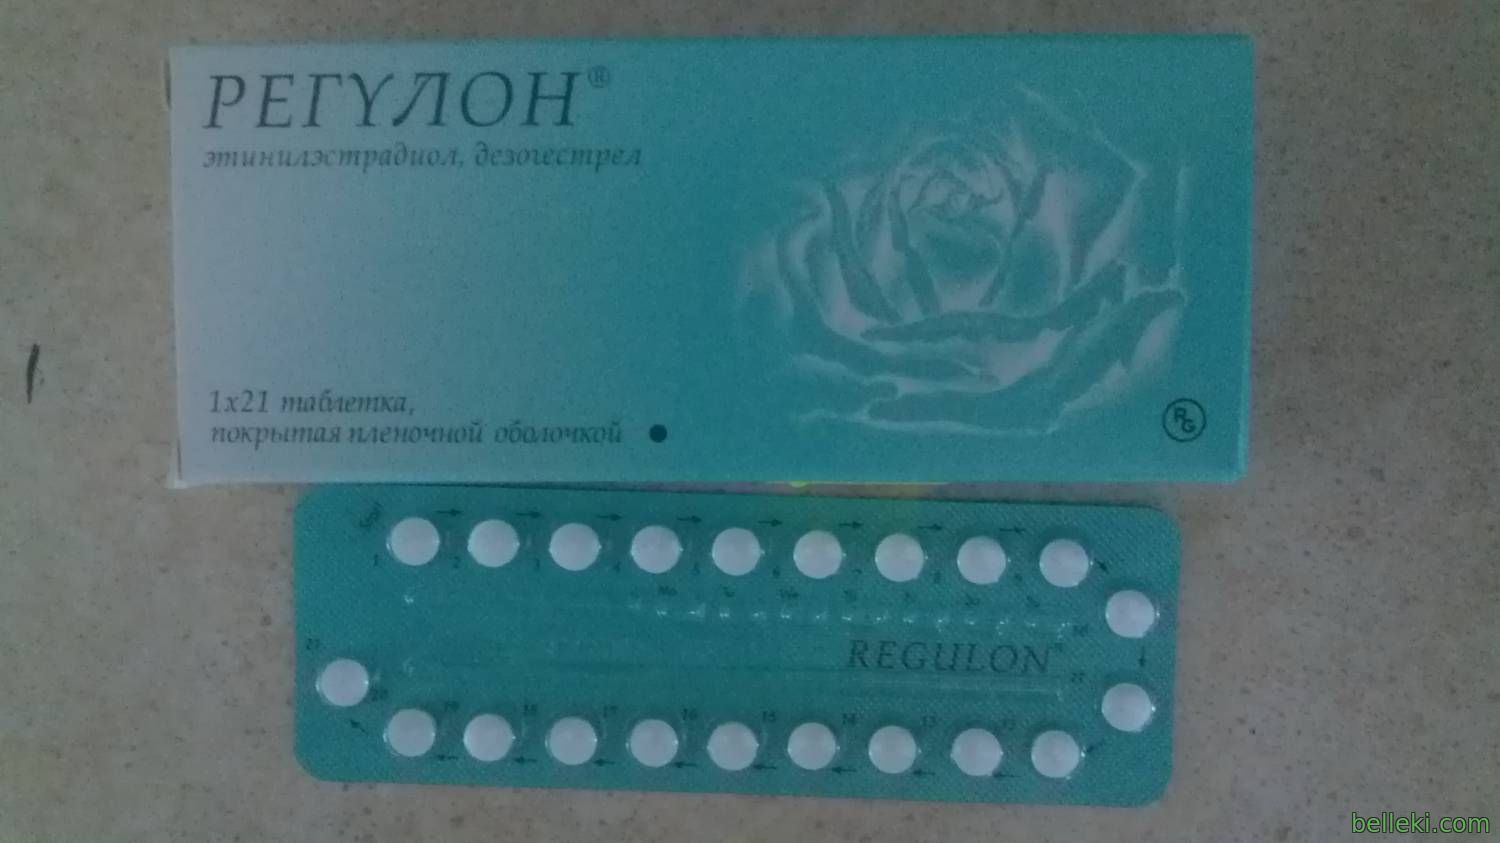 Можно ли начать пить противозачаточные таблетки. Оральный контрацептив регулон. Таблетки от беременности регулон. Противозачаточные таблетки регулон. Противозачаточные таблетки regulon.